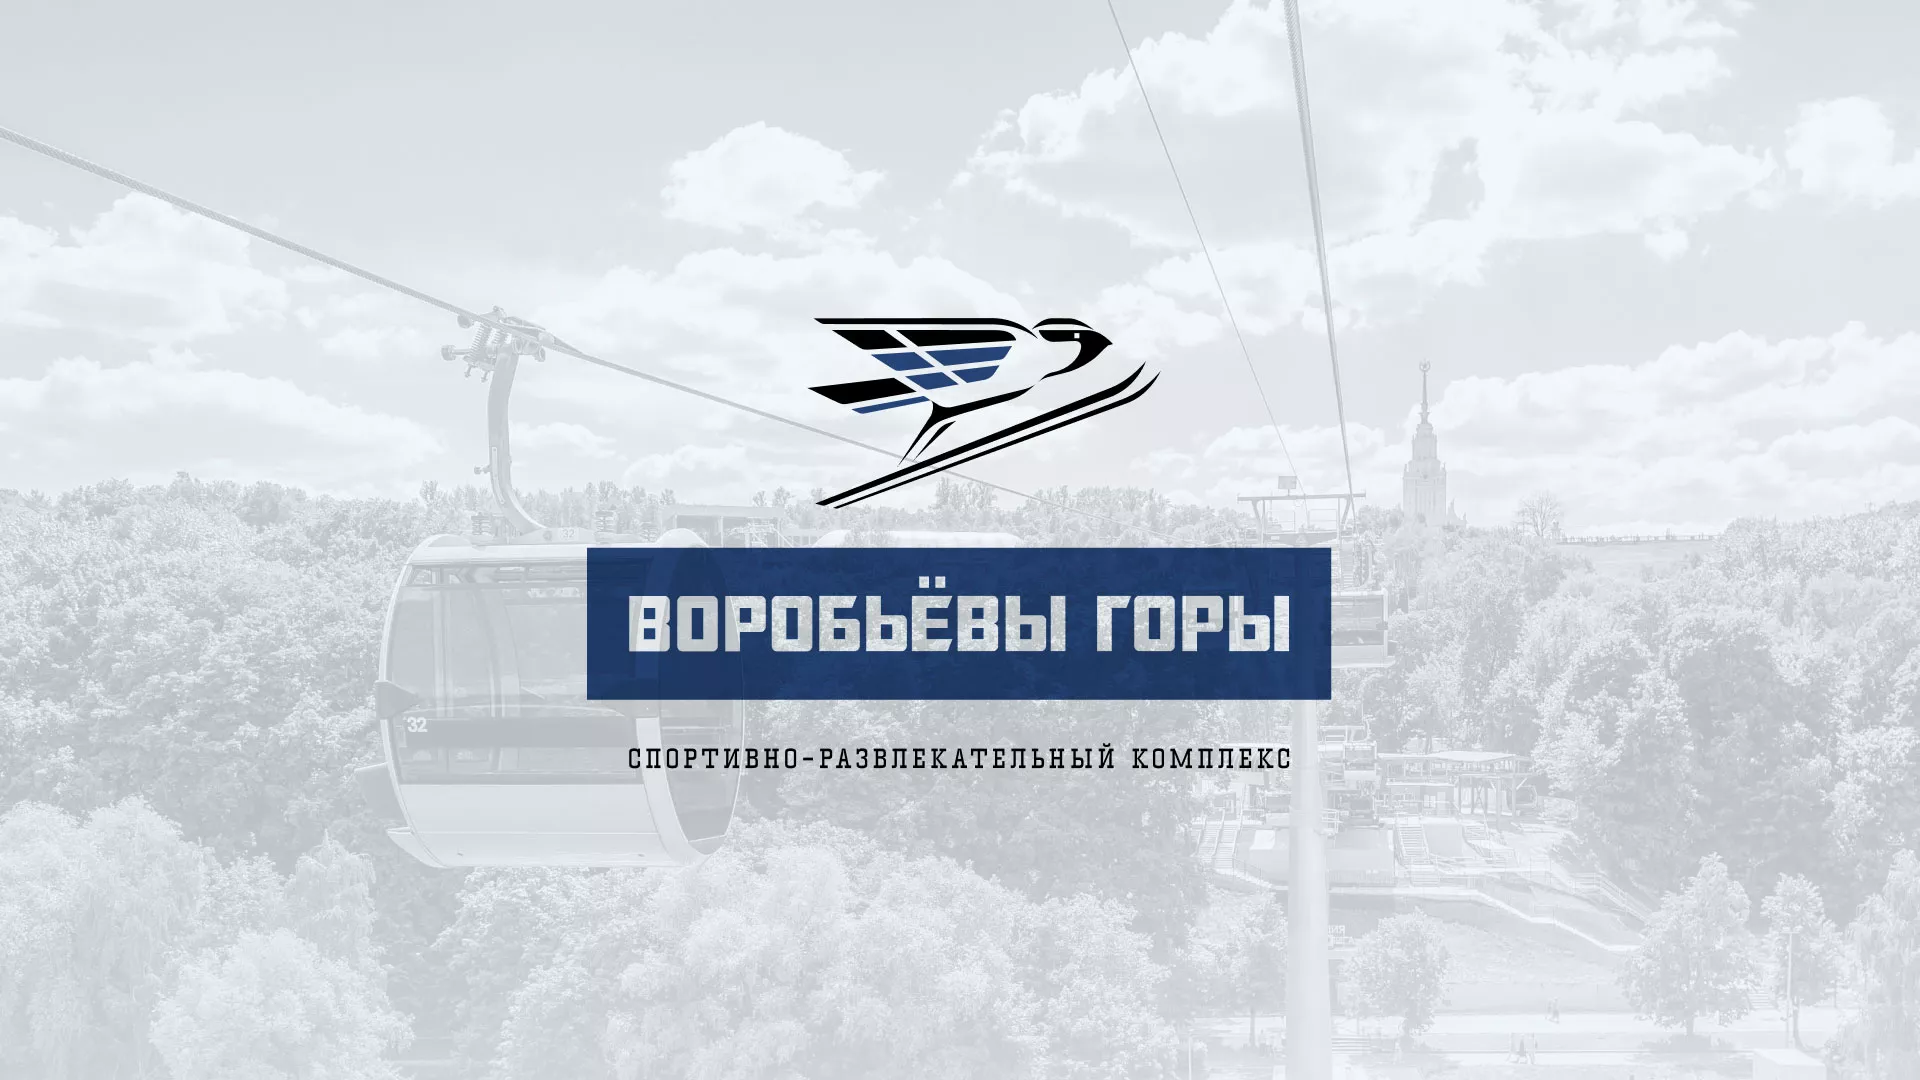 Разработка сайта в Скопине для спортивно-развлекательного комплекса «Воробьёвы горы»